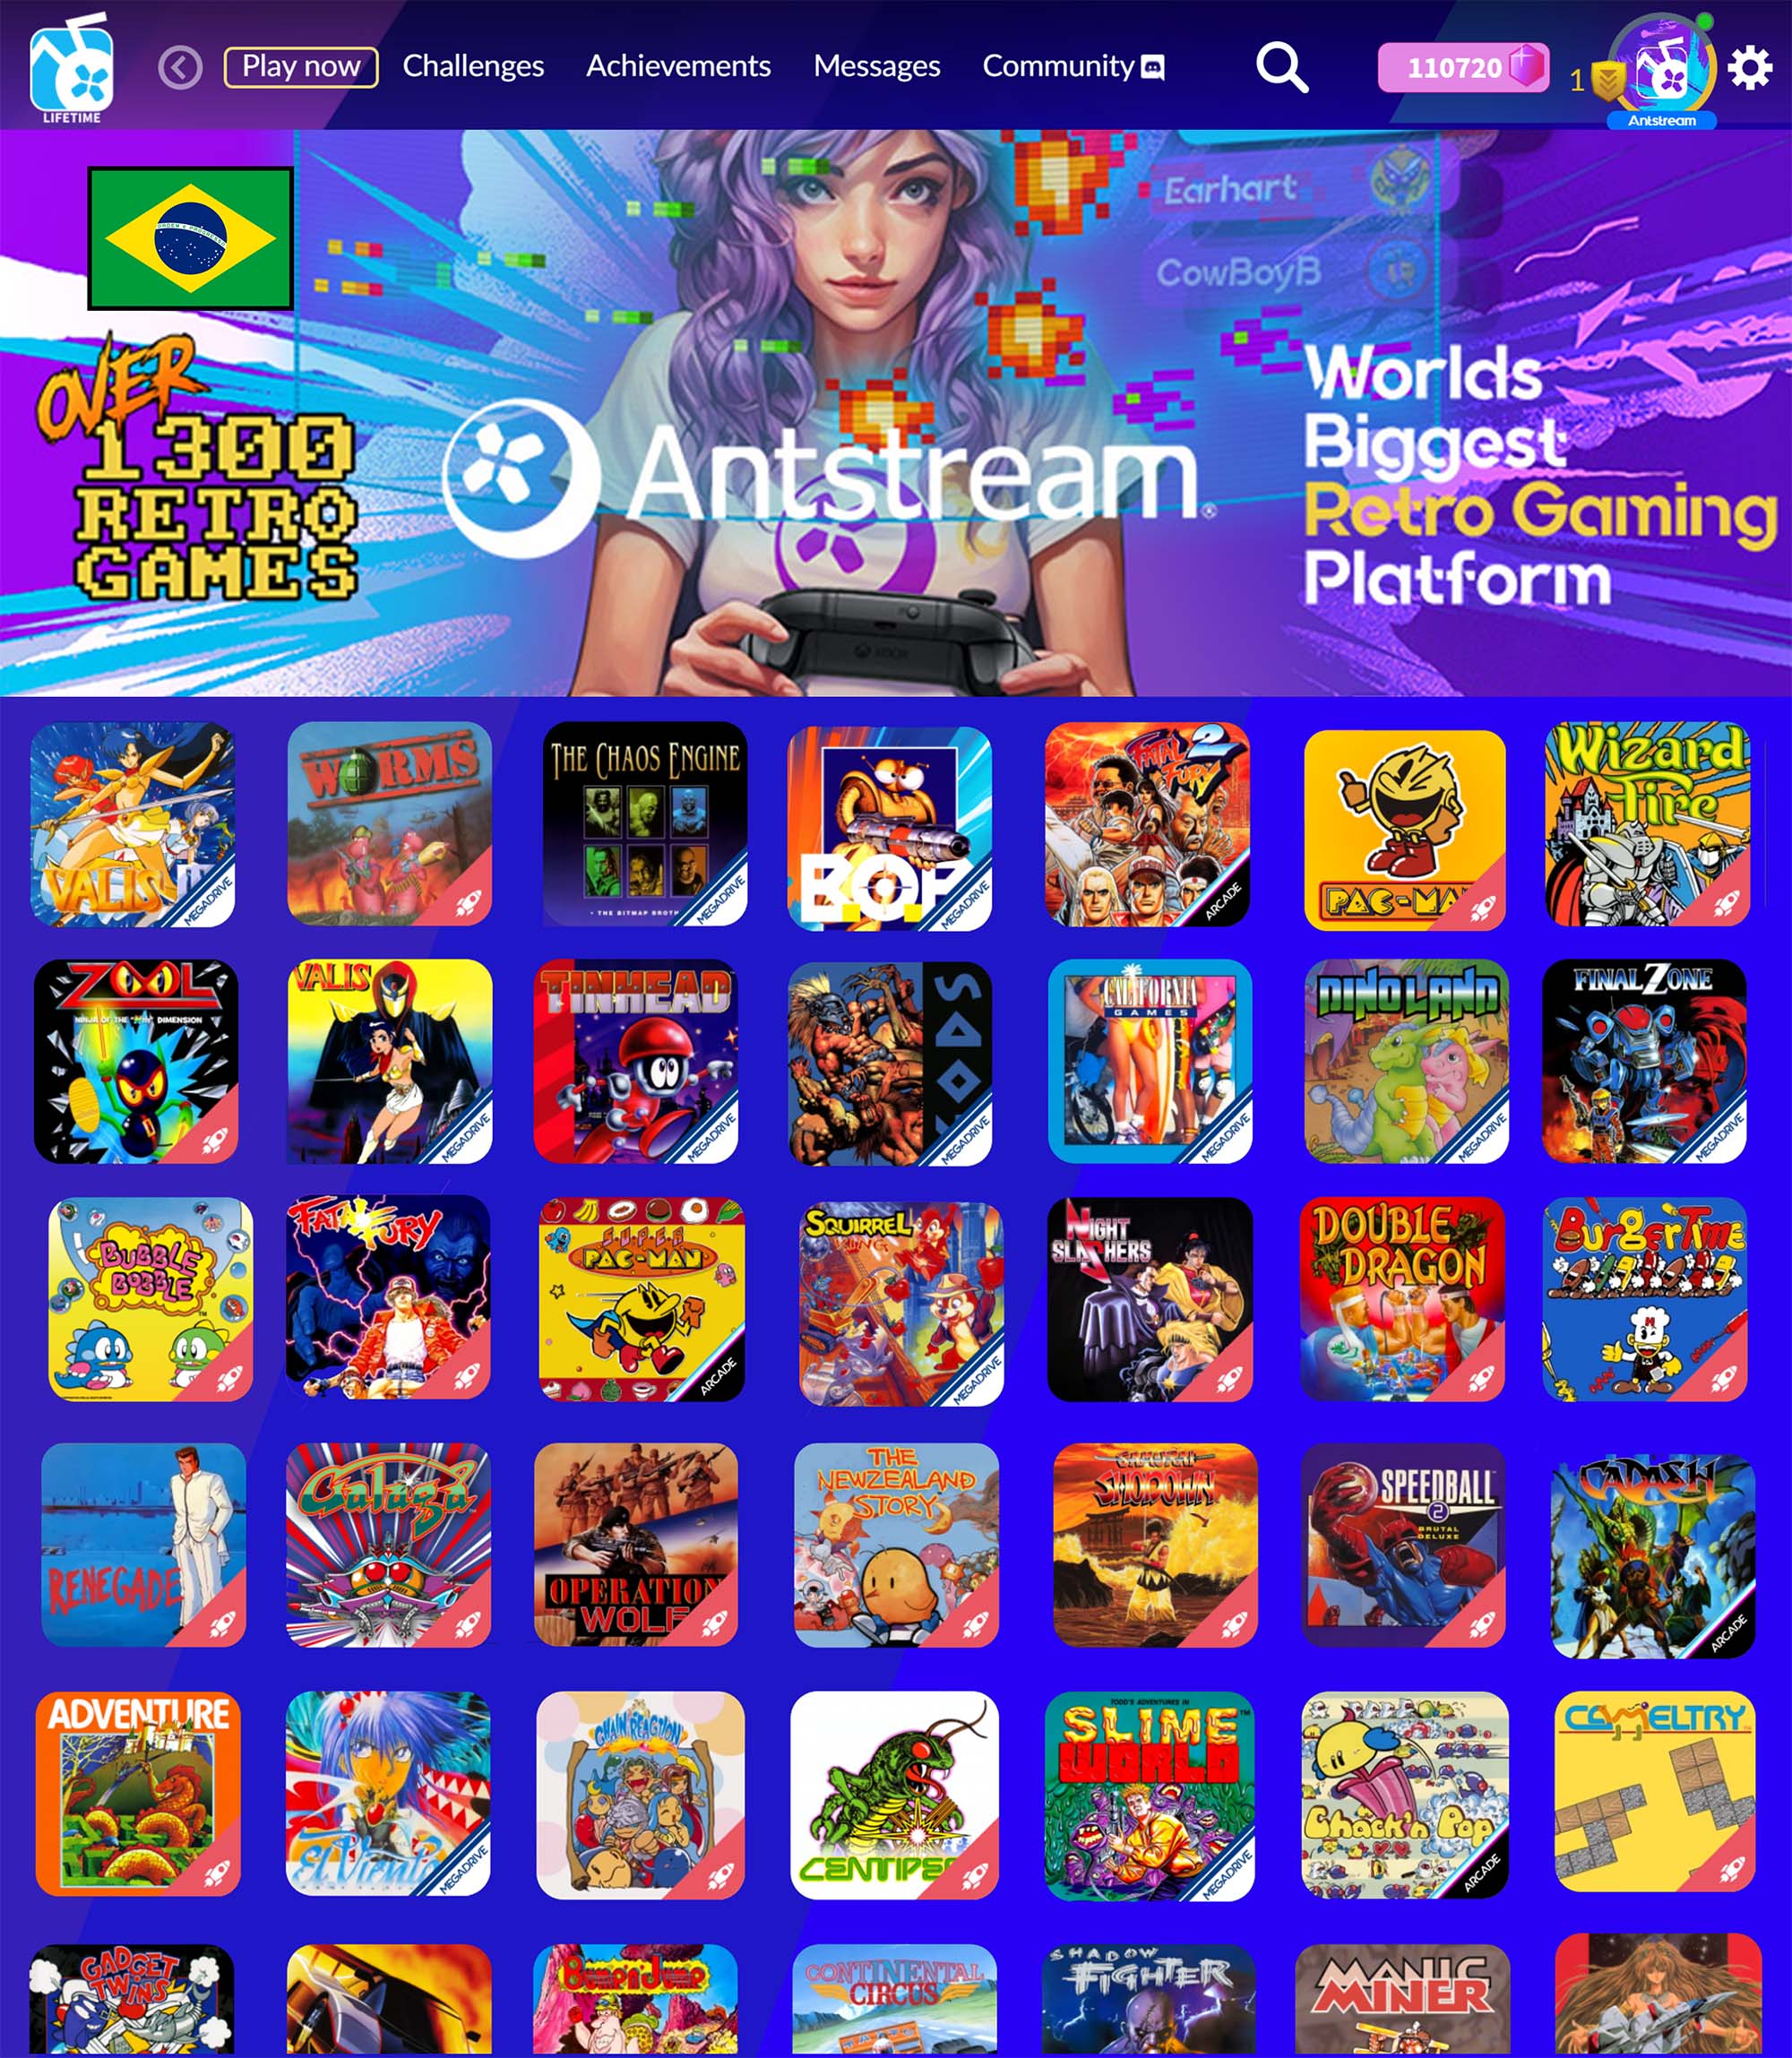 Antstream arcade games